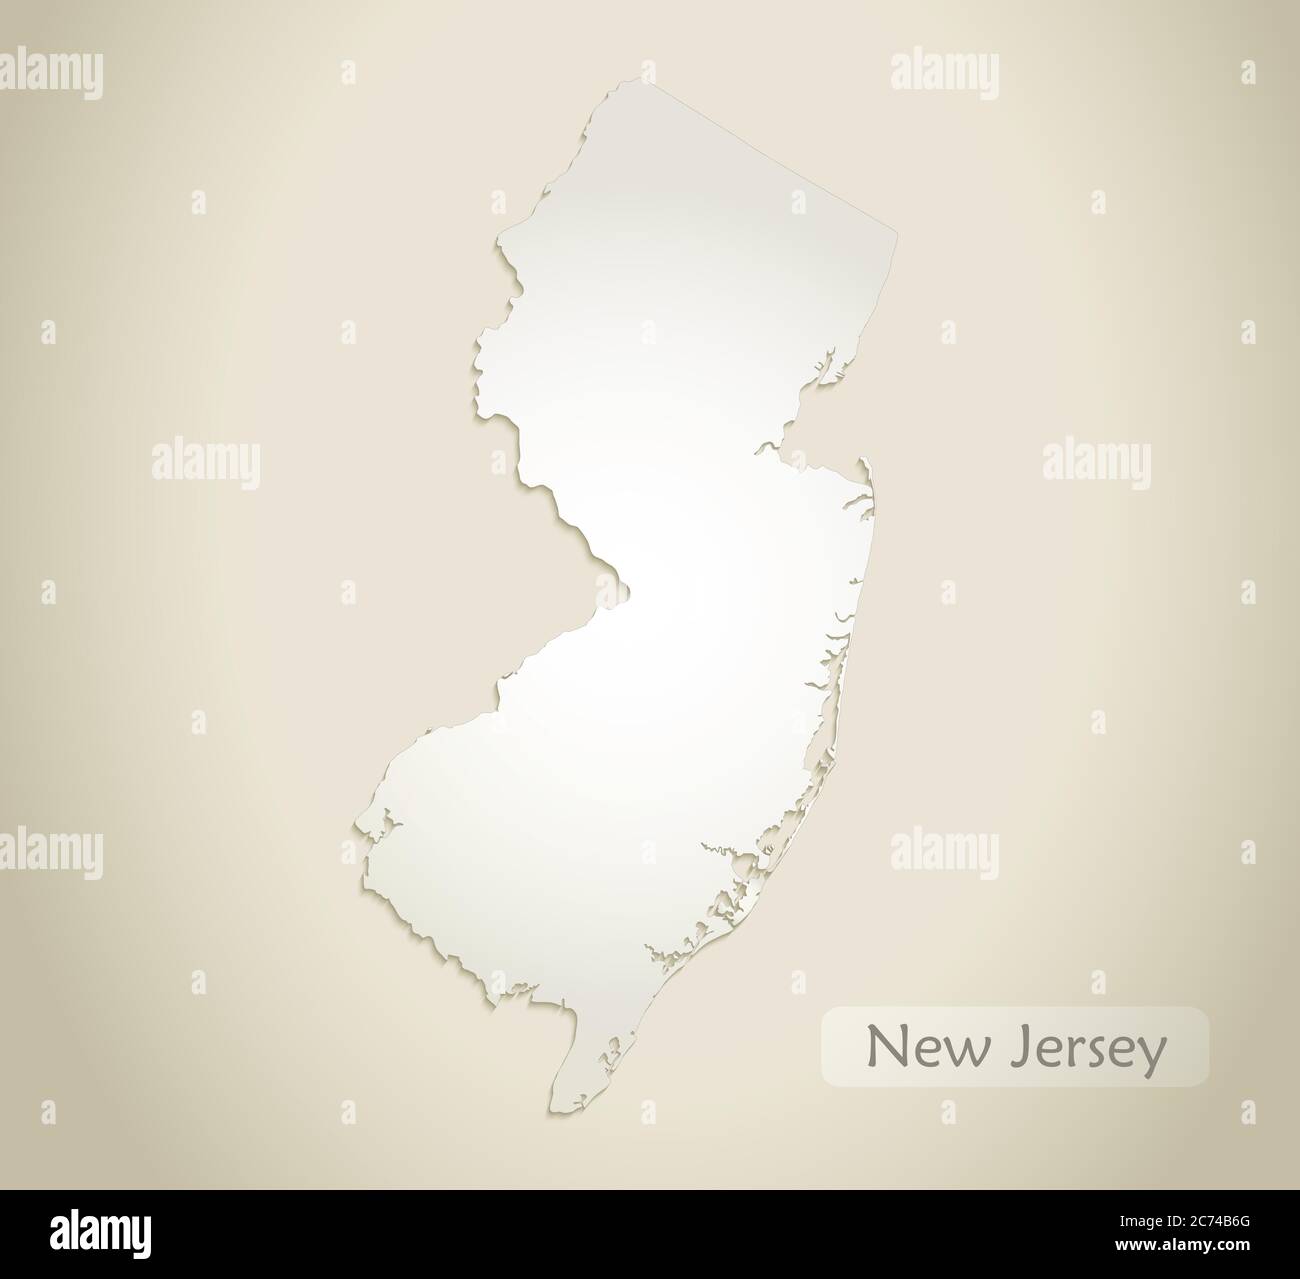 Mapa de Nueva Jersey, vector de fondo de papel antiguo Ilustración del Vector